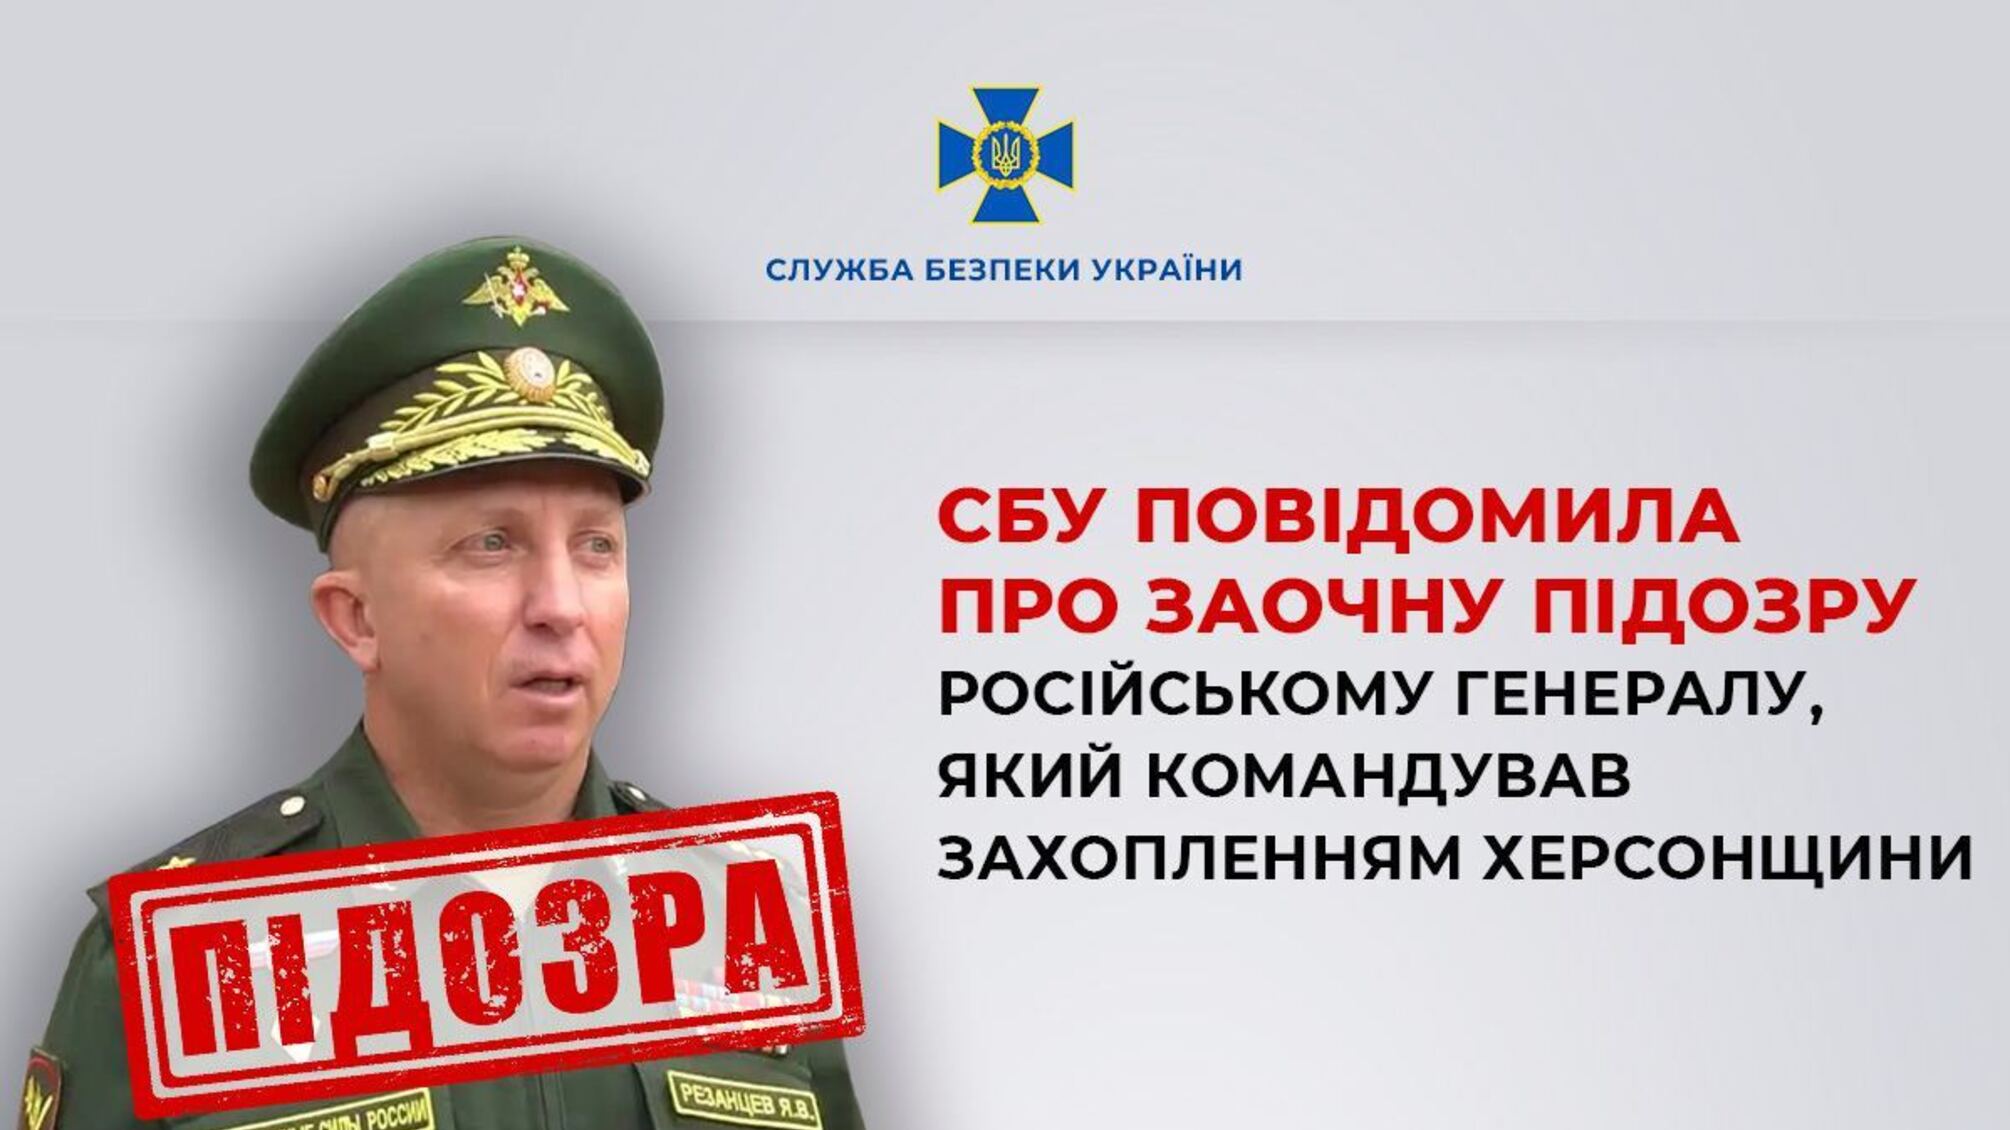 СБУ сообщила о заочном подозрении российскому генералу